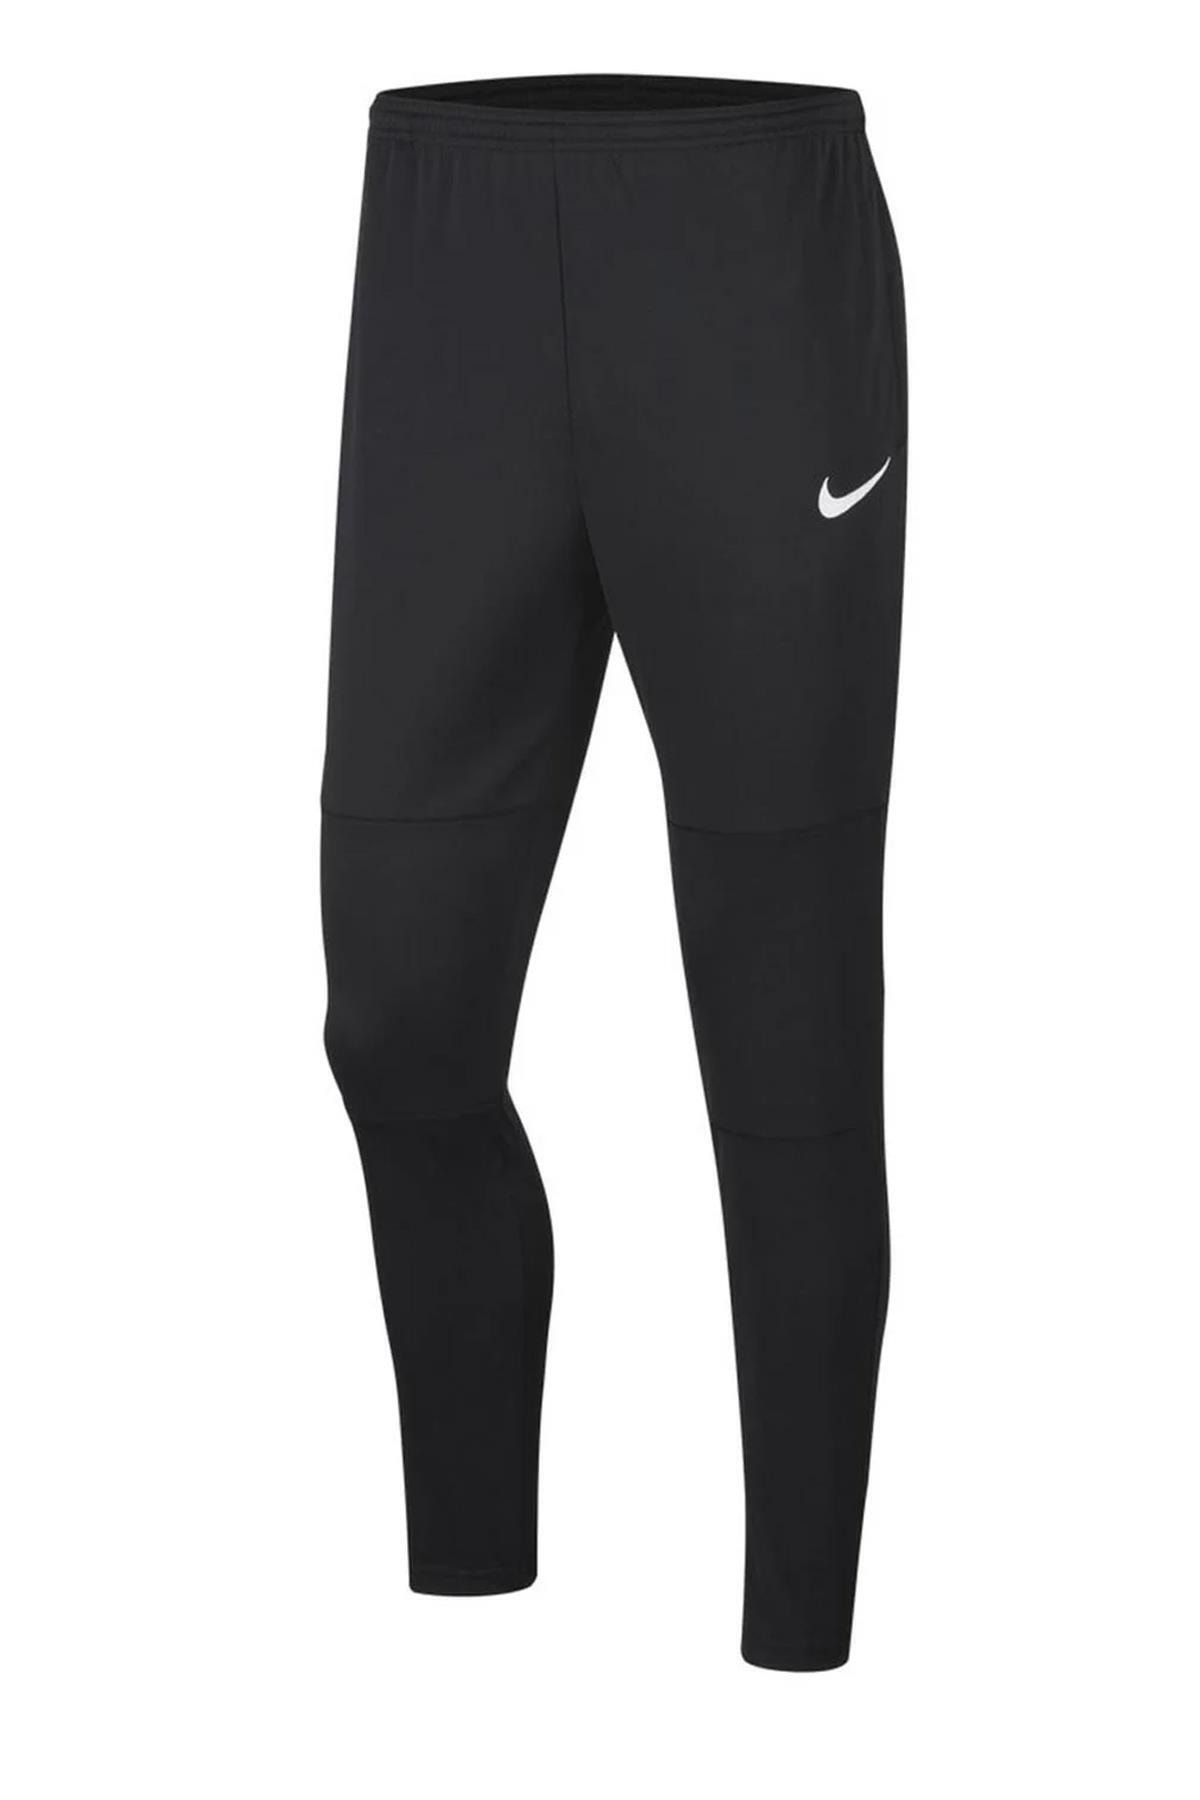 Nike M Dry Park 20 Pant Eşofman Altı Bv6877 - 010 Siyah Siyah-xxl